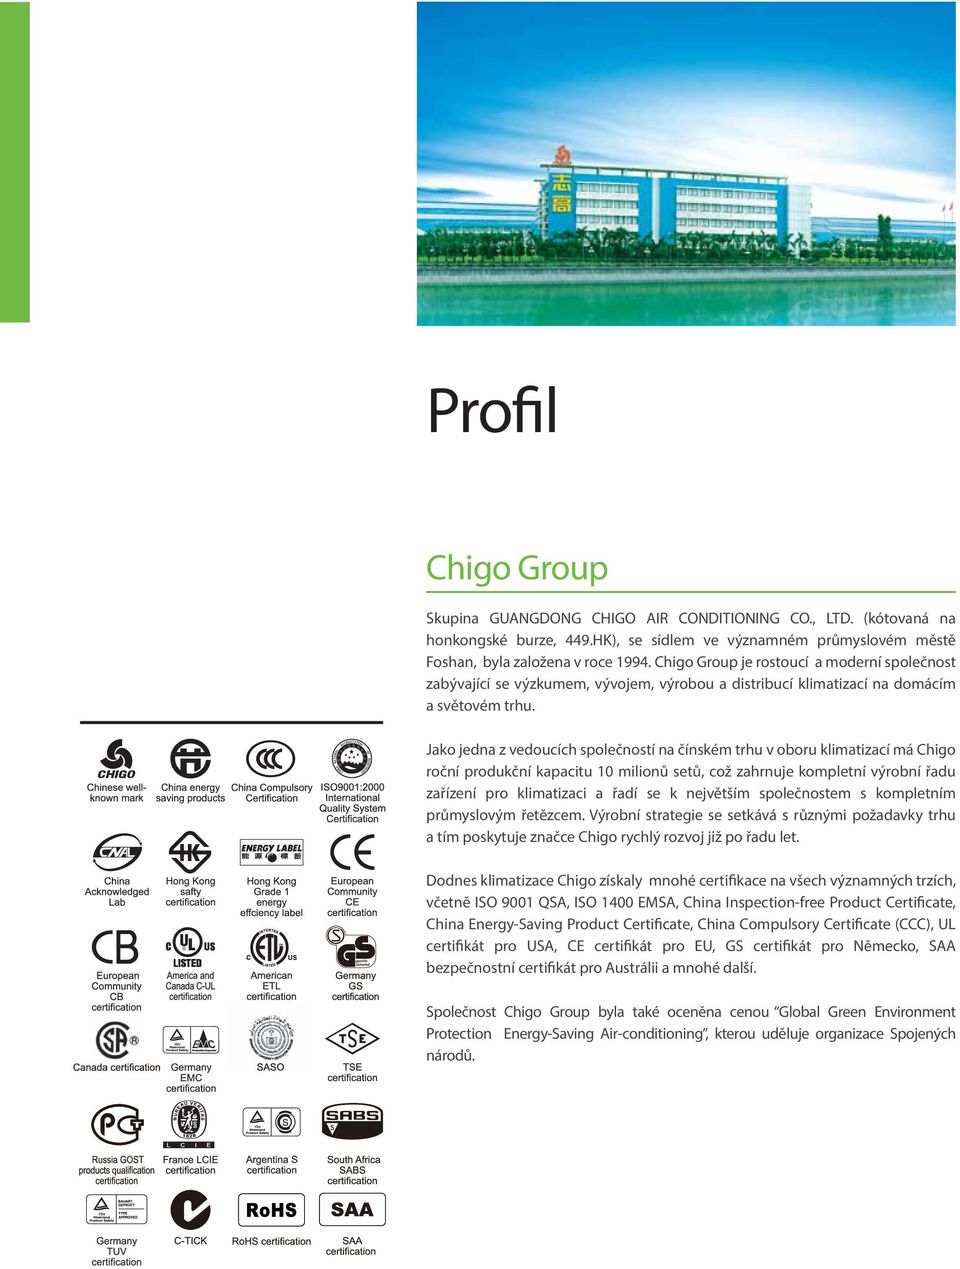 Jako jedna z vedoucích společností na čínském trhu v oboru klimatizací má Chigo roční produkční kapacitu 10 milionů setů, což zahrnuje kompletní výrobní řadu zařízení pro klimatizaci a řadí se k